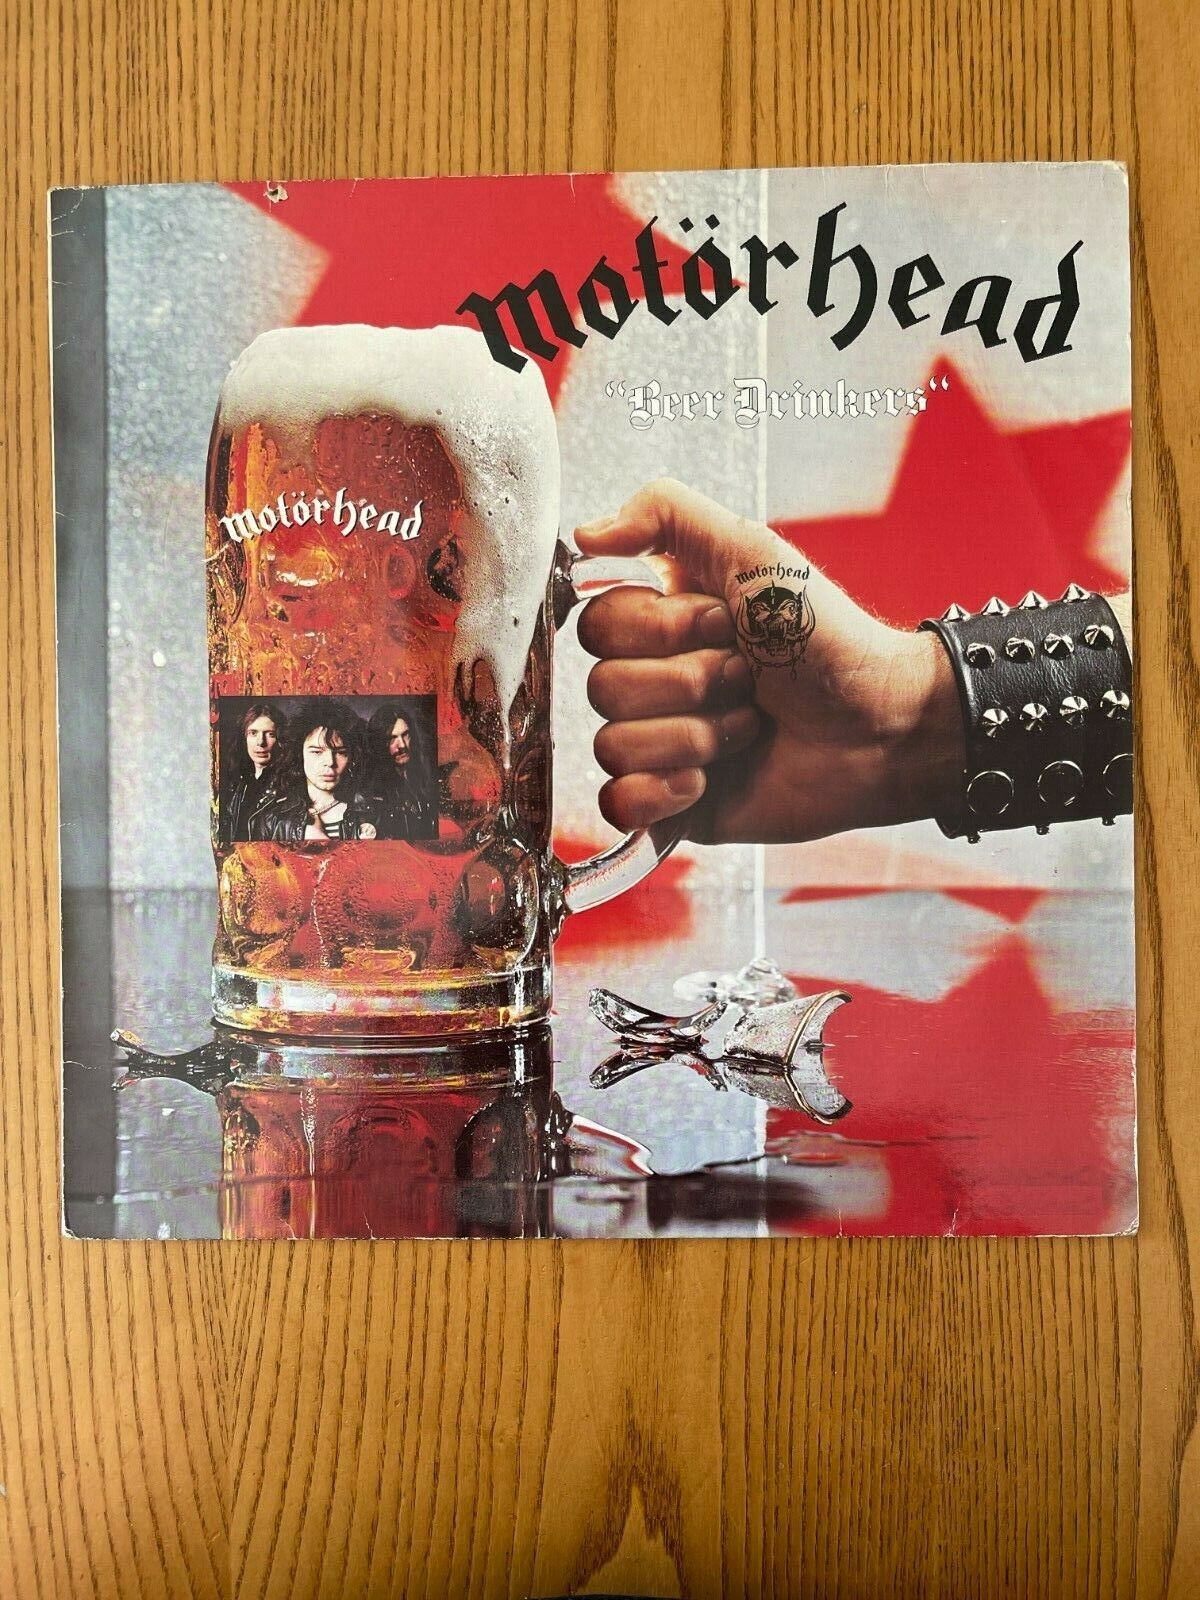 Motorhead - Beer Drinkers - EX OG 1982 Chiswick vinyl LP - 0067-086 - Germany